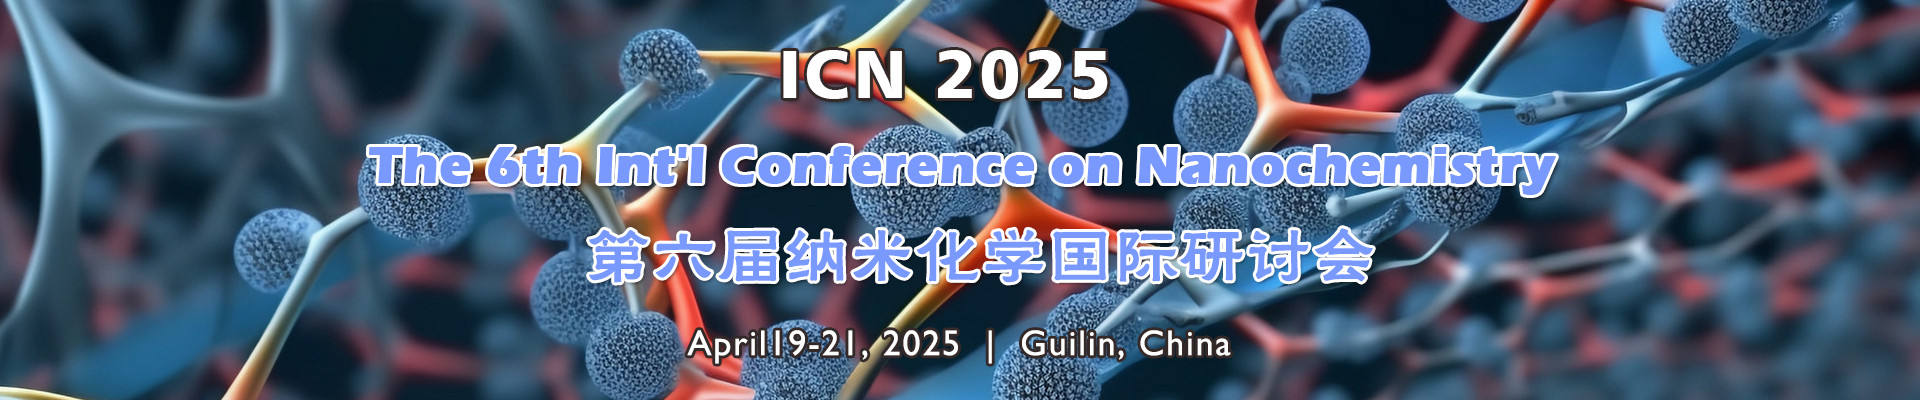 第六届纳米化学国际研讨会(ICN 2025)